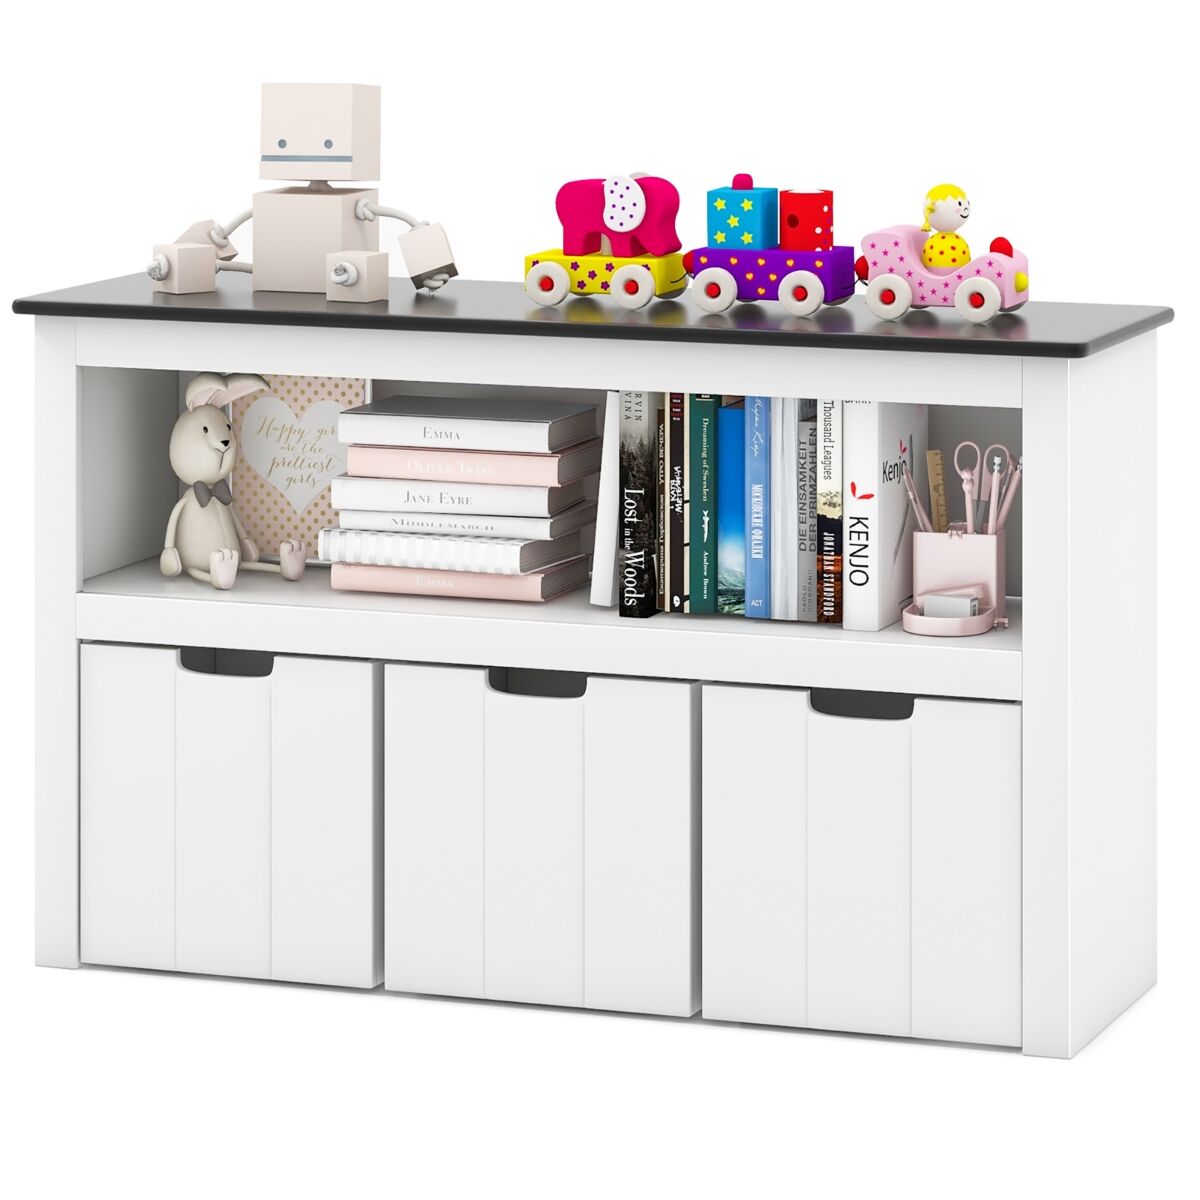 Costway Kids Toy Storage Organizer Wooden Bookshelf with 3 Drawers Hidden Wheel Blackboard - White